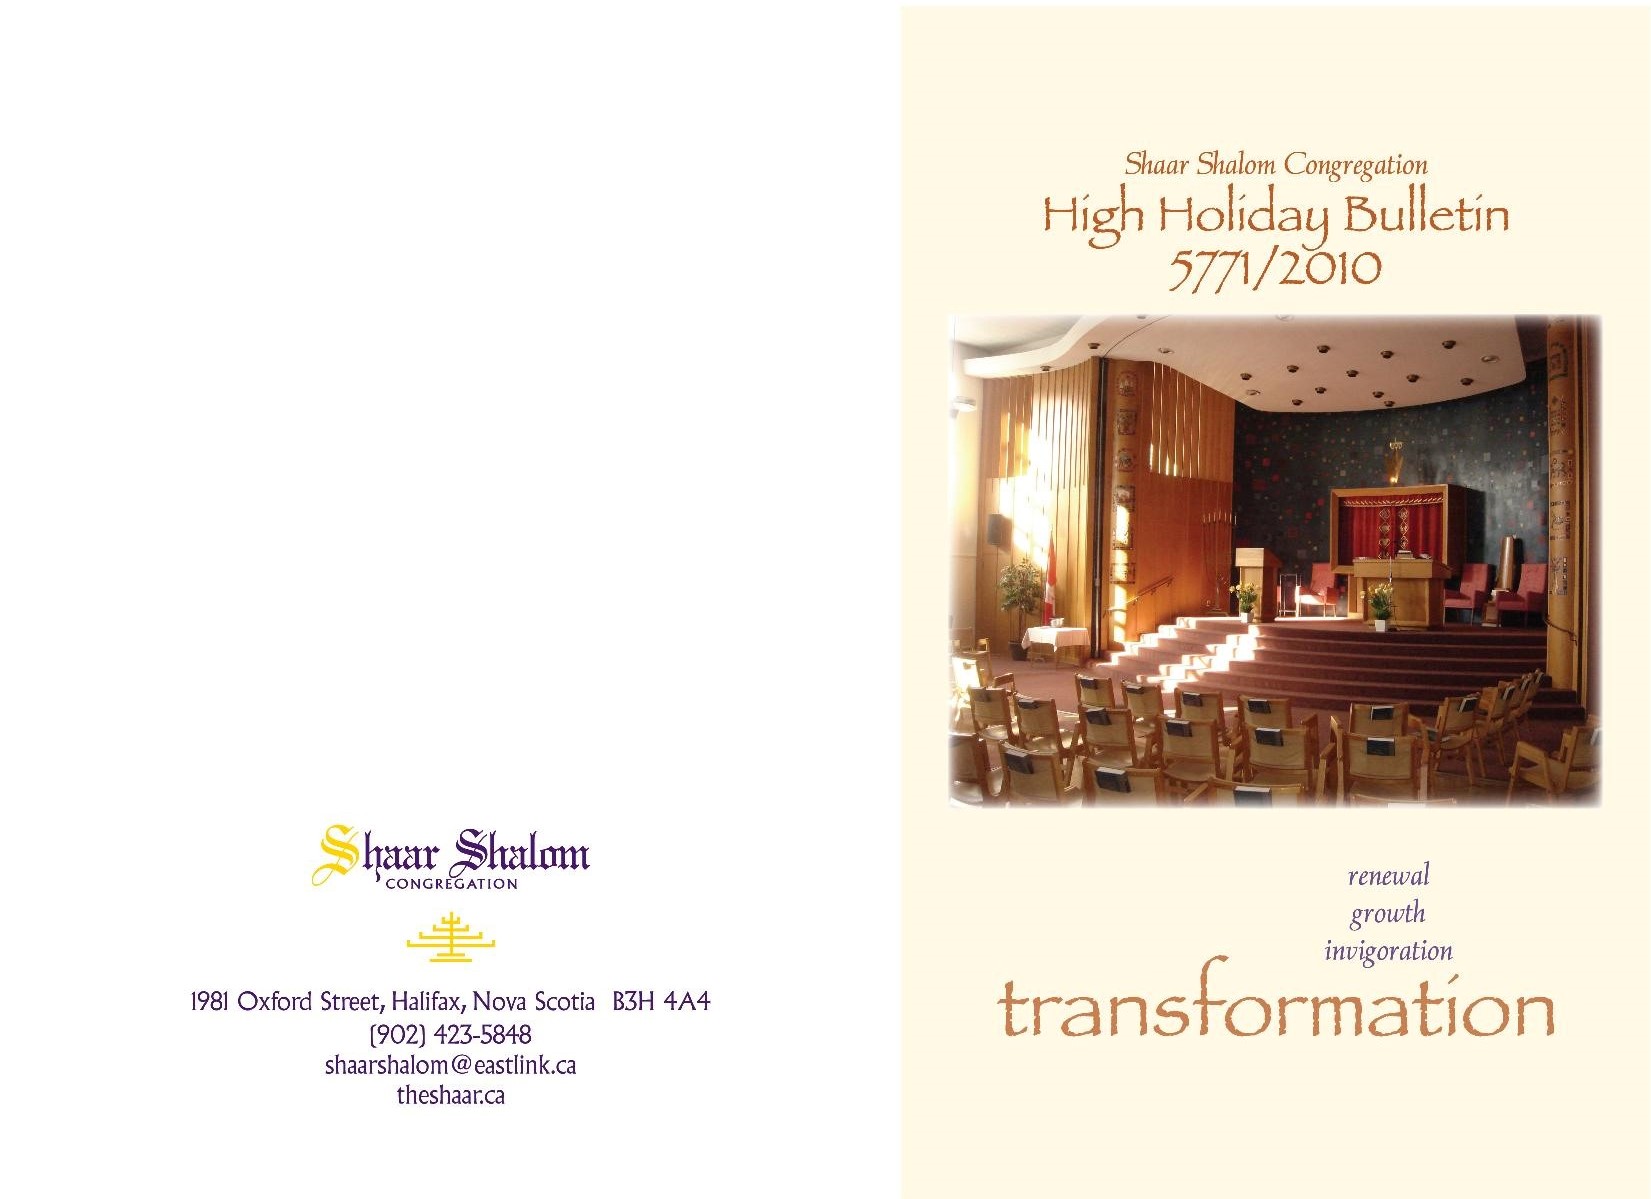 Shaar Shalom High Holiday Bulletin 2010 cover